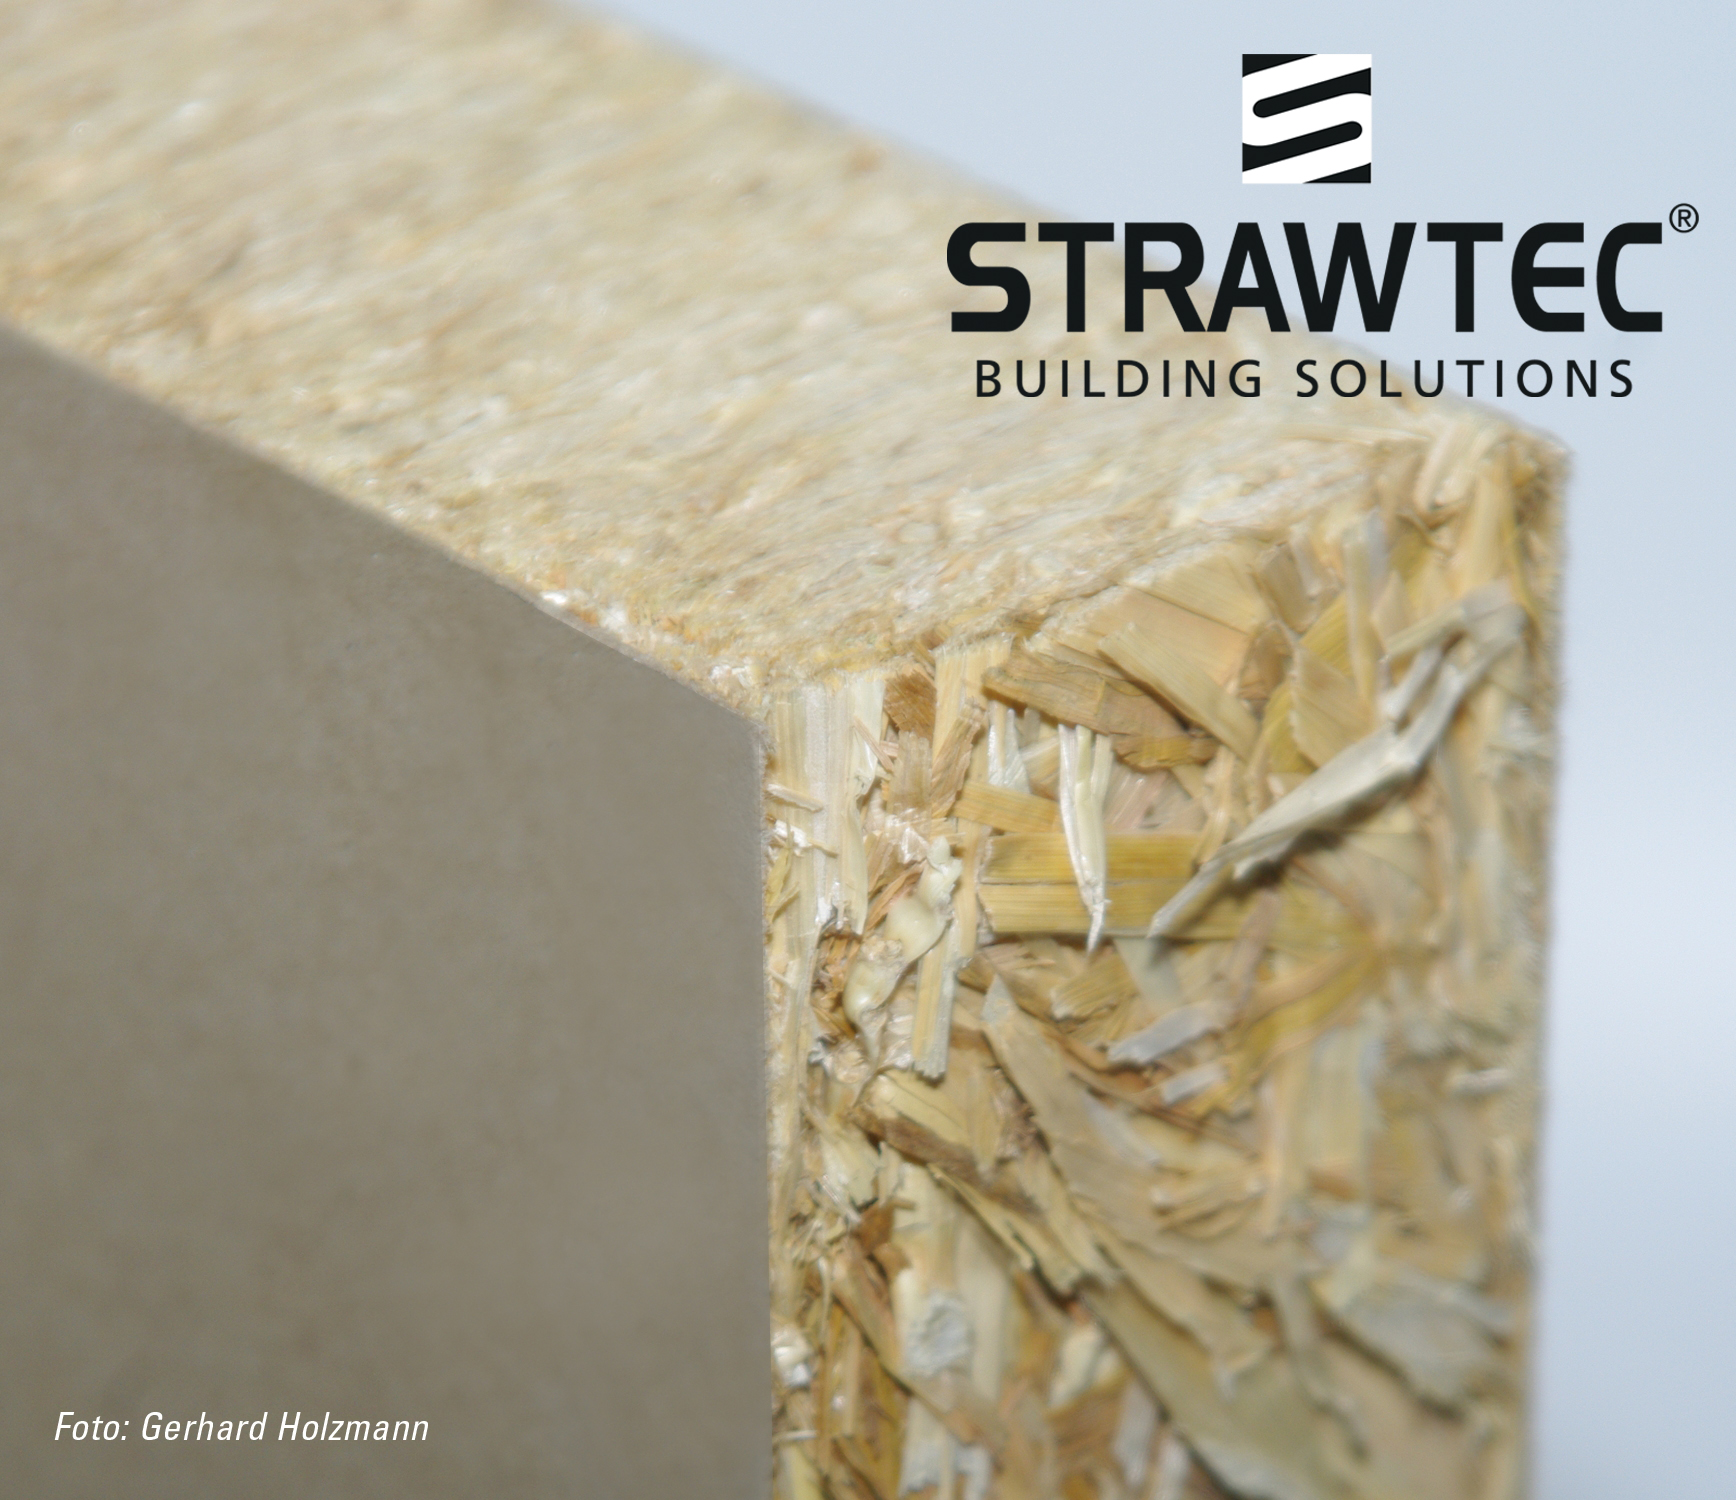 Bildquelle: STRAWTEC Building Solutions, www.strawtec.com